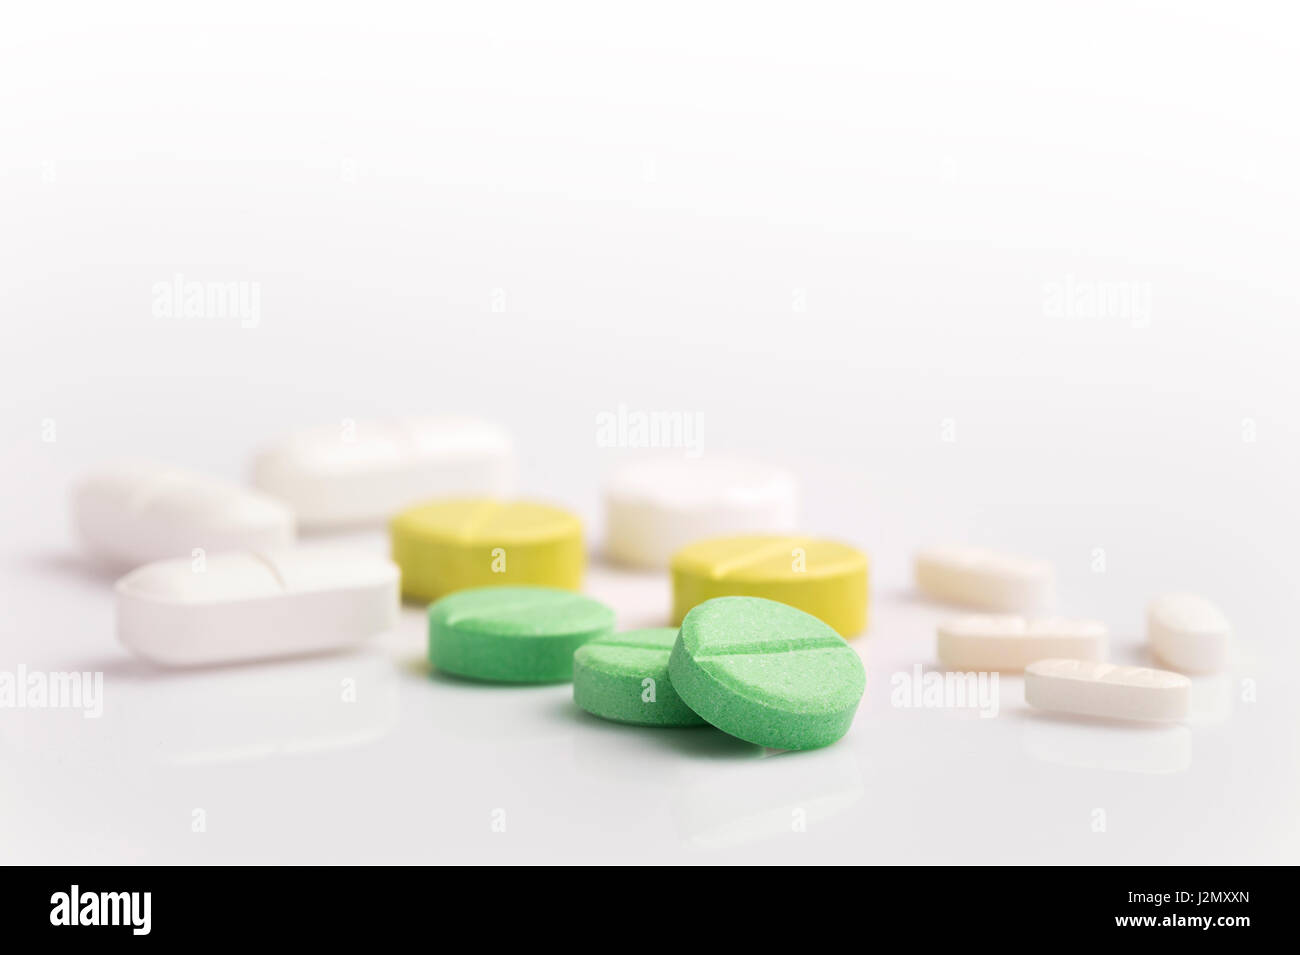 Medizin-Pillen in verschiedenen Formen, Farben und Größen auf weißem Hintergrund mit selektiven Fokus auf die vordere grüne Pille, Raum für Exemplar auf der Oberseite Stockfoto